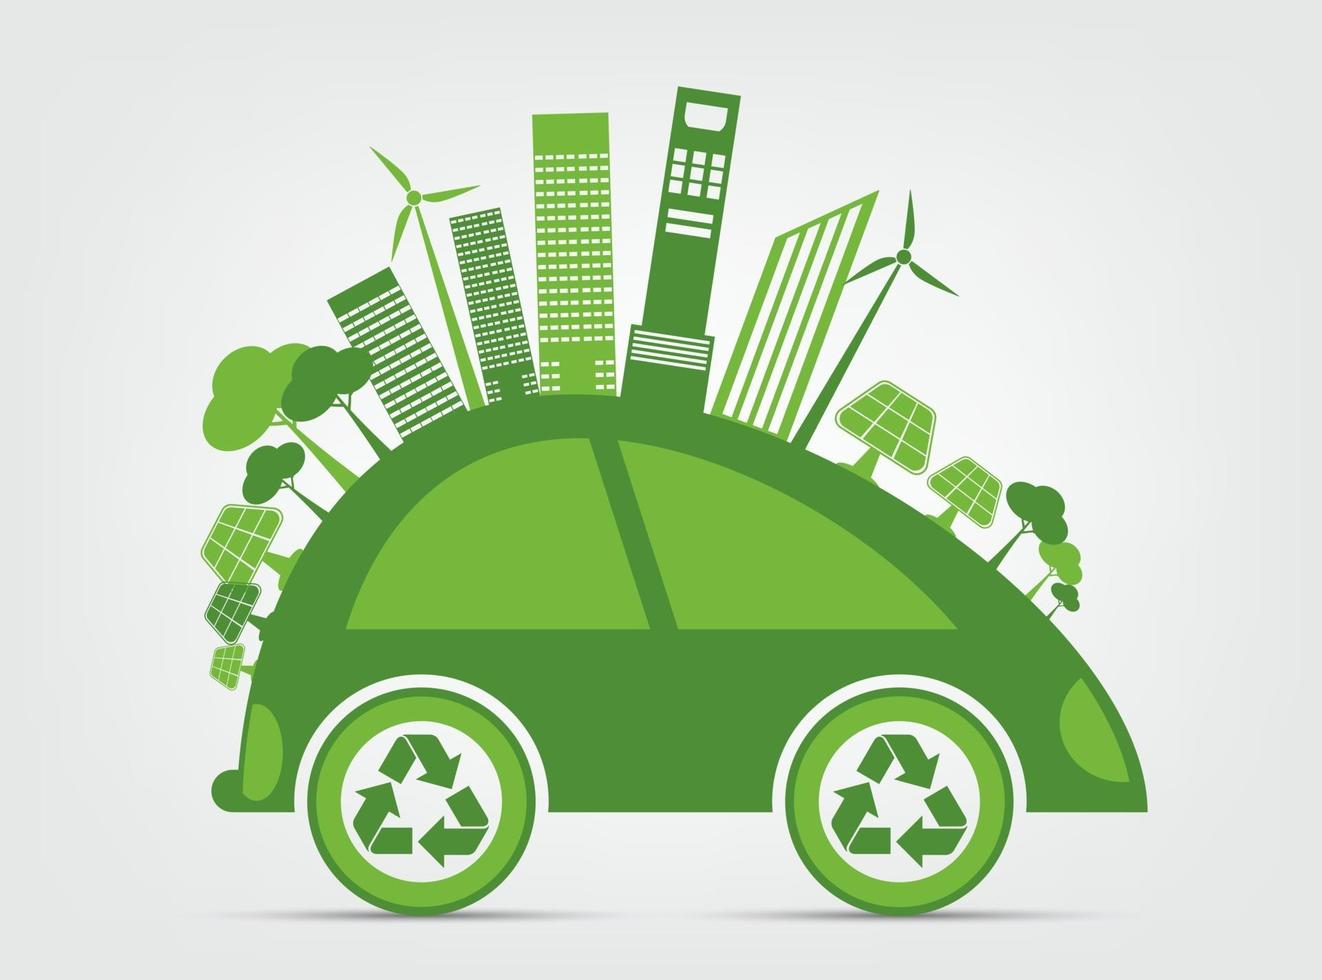 ekologi och miljö stadsbild koncept bil symbol med gröna blad runt städer hjälper världen med miljövänliga idéer vektor